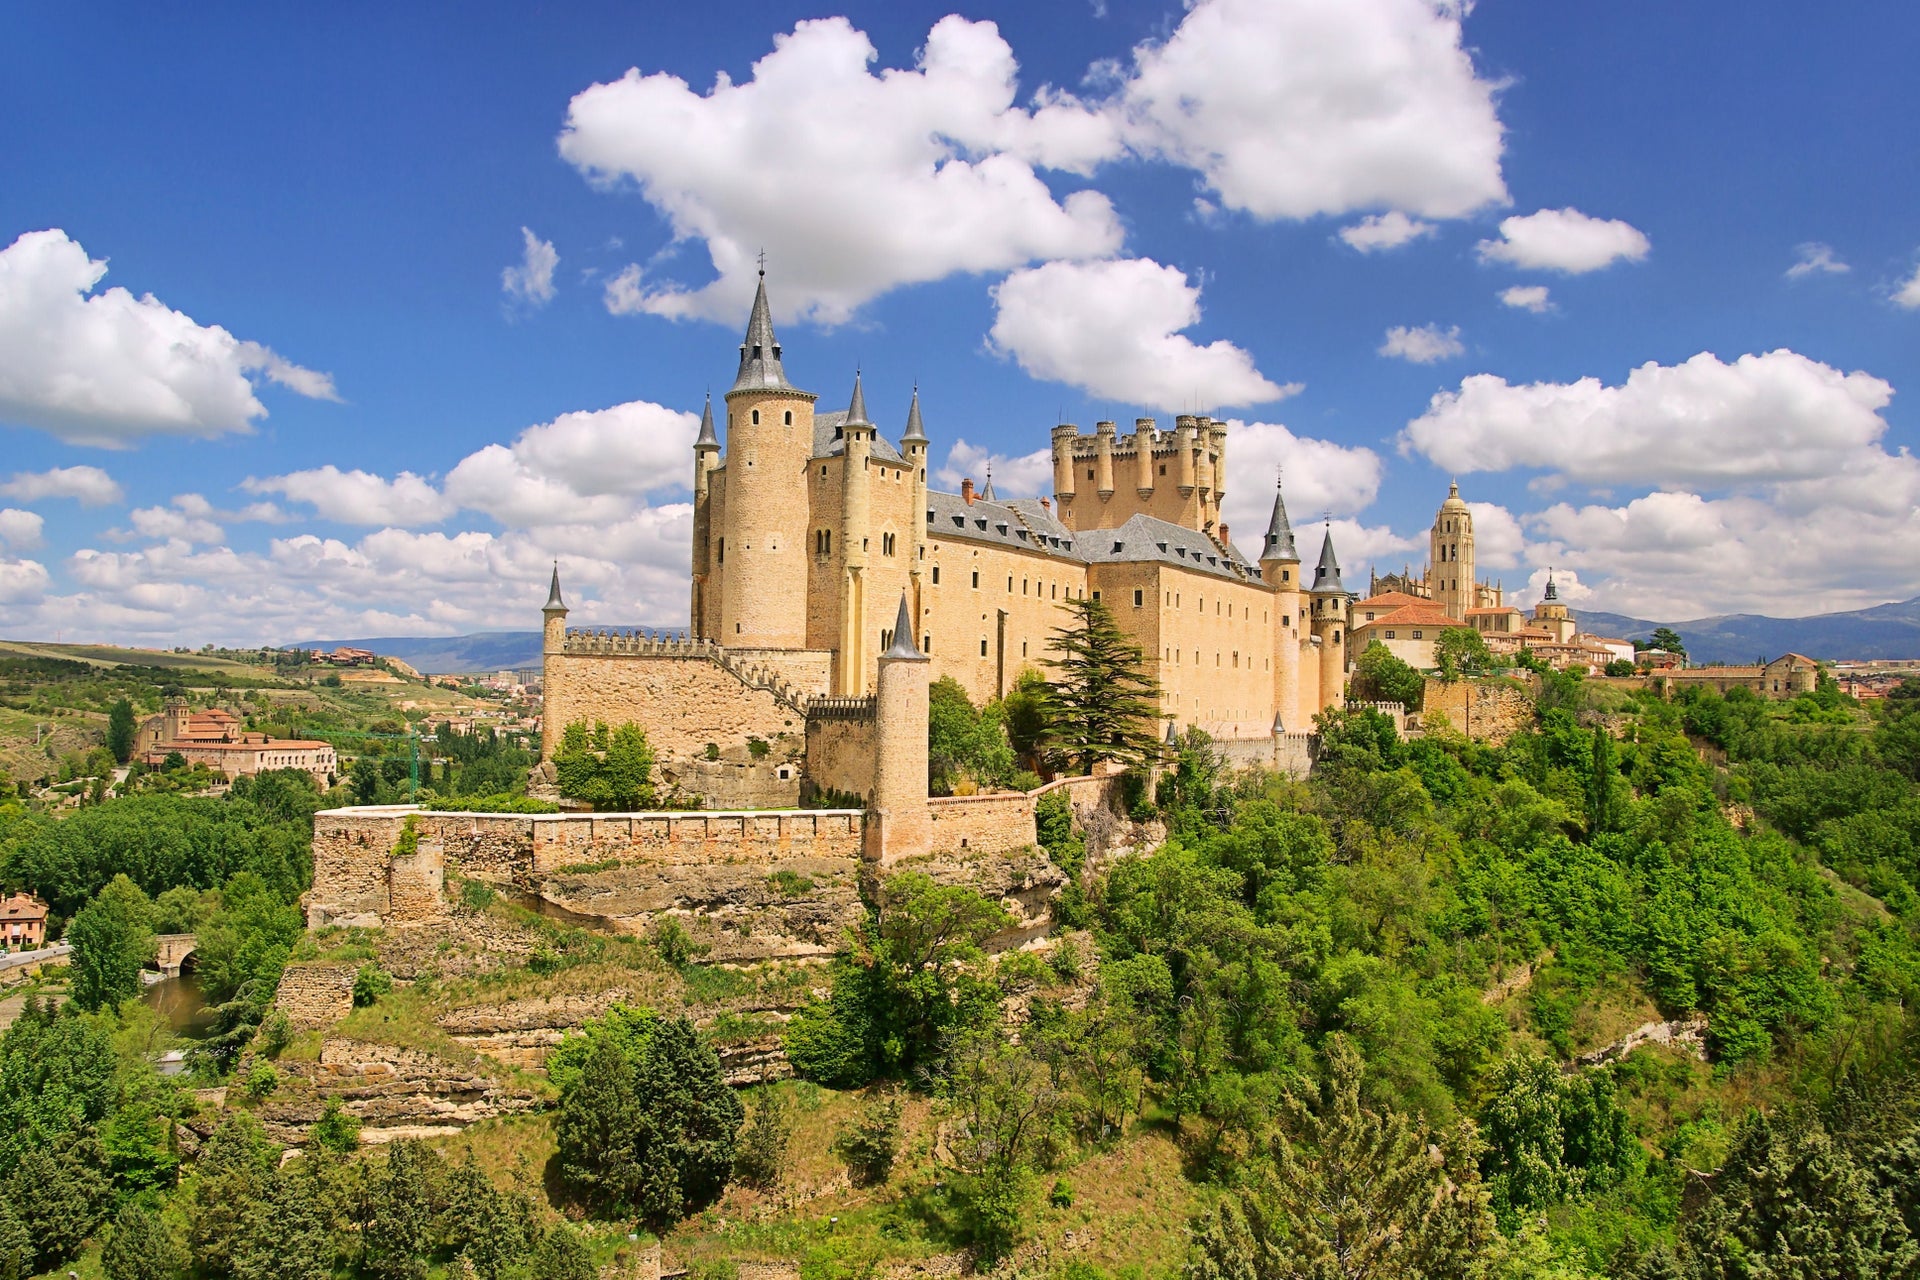 Excursión a Segovia, El Escorial y Valle de los Caídos